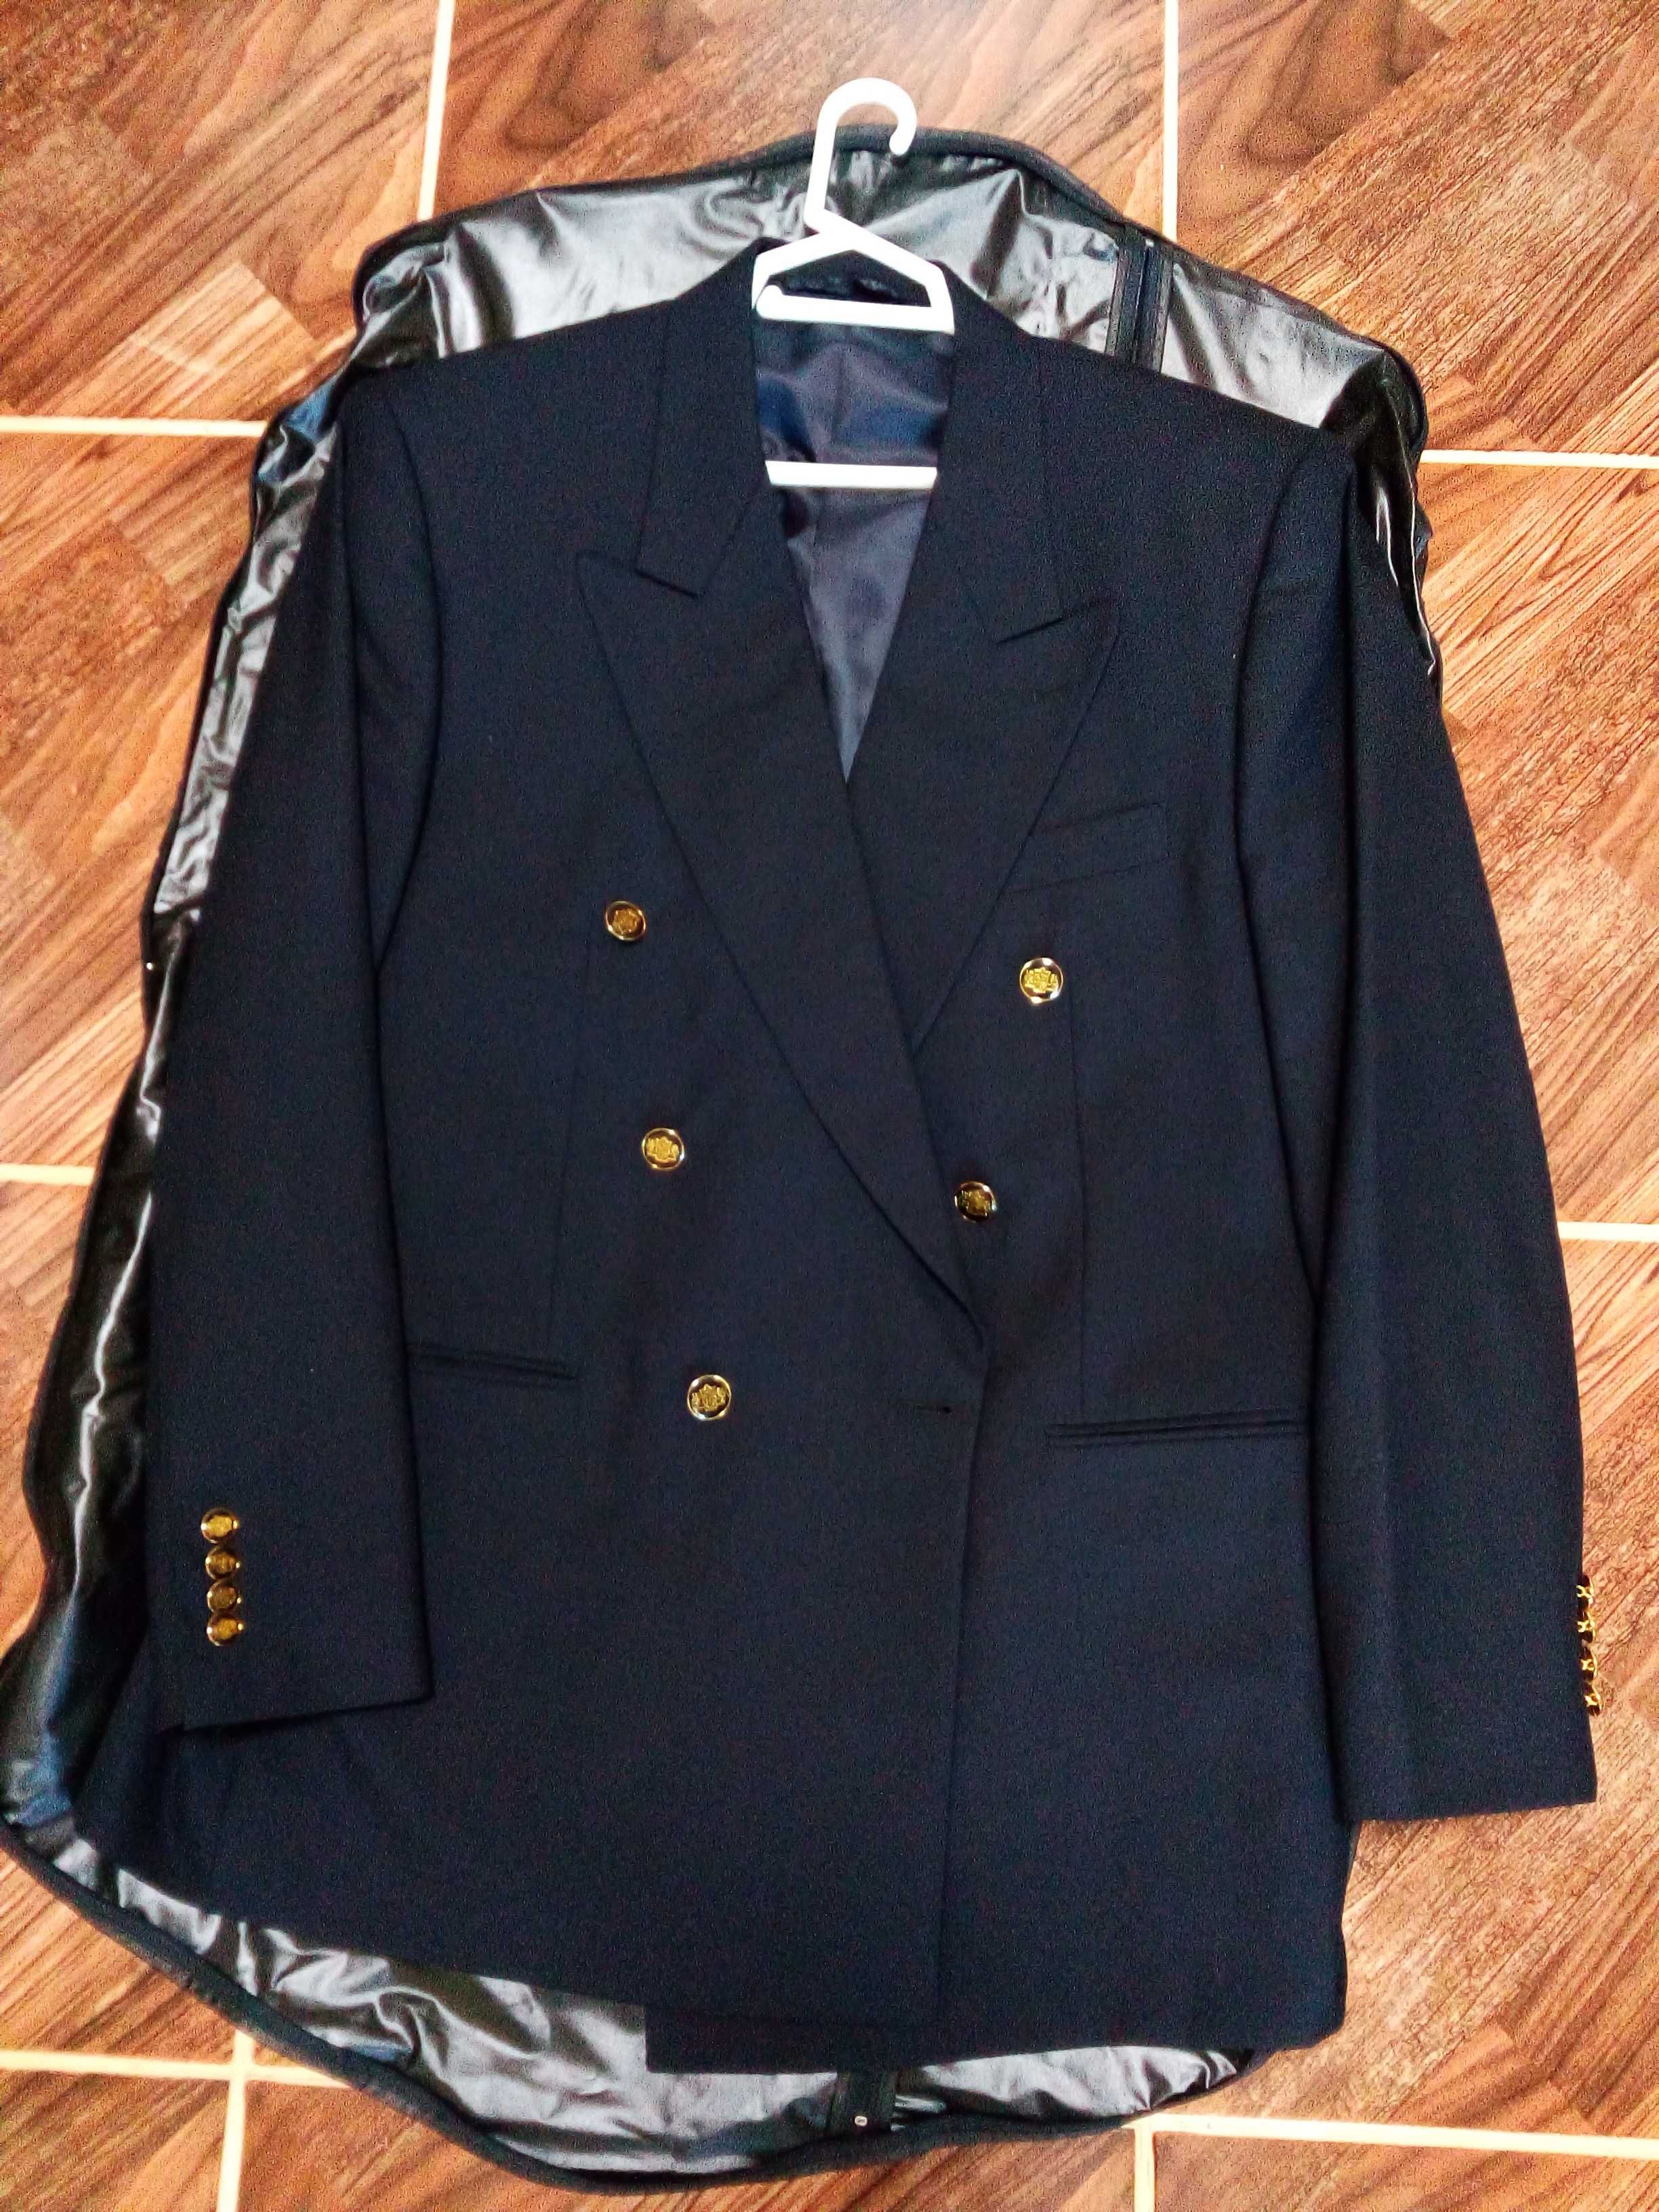 Шикарный двубортный пиджак пр-во Италия, привезли из Дубай. Размер 52